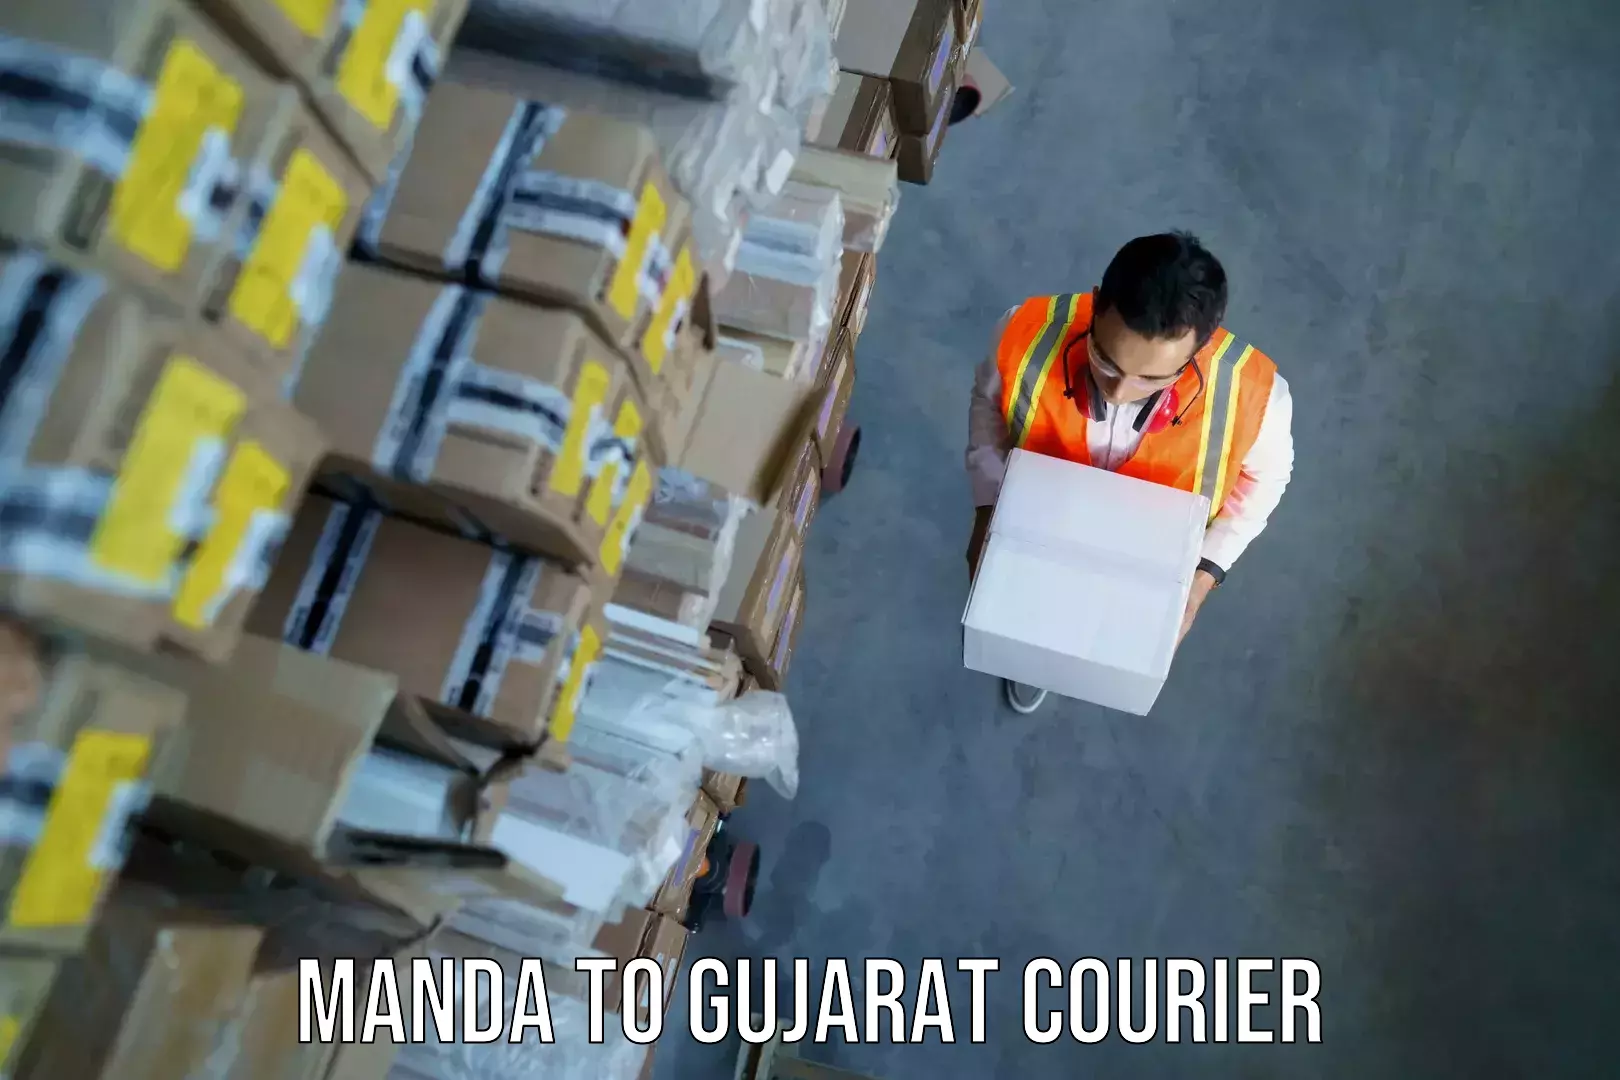 Luggage transit service Manda to Gujarat